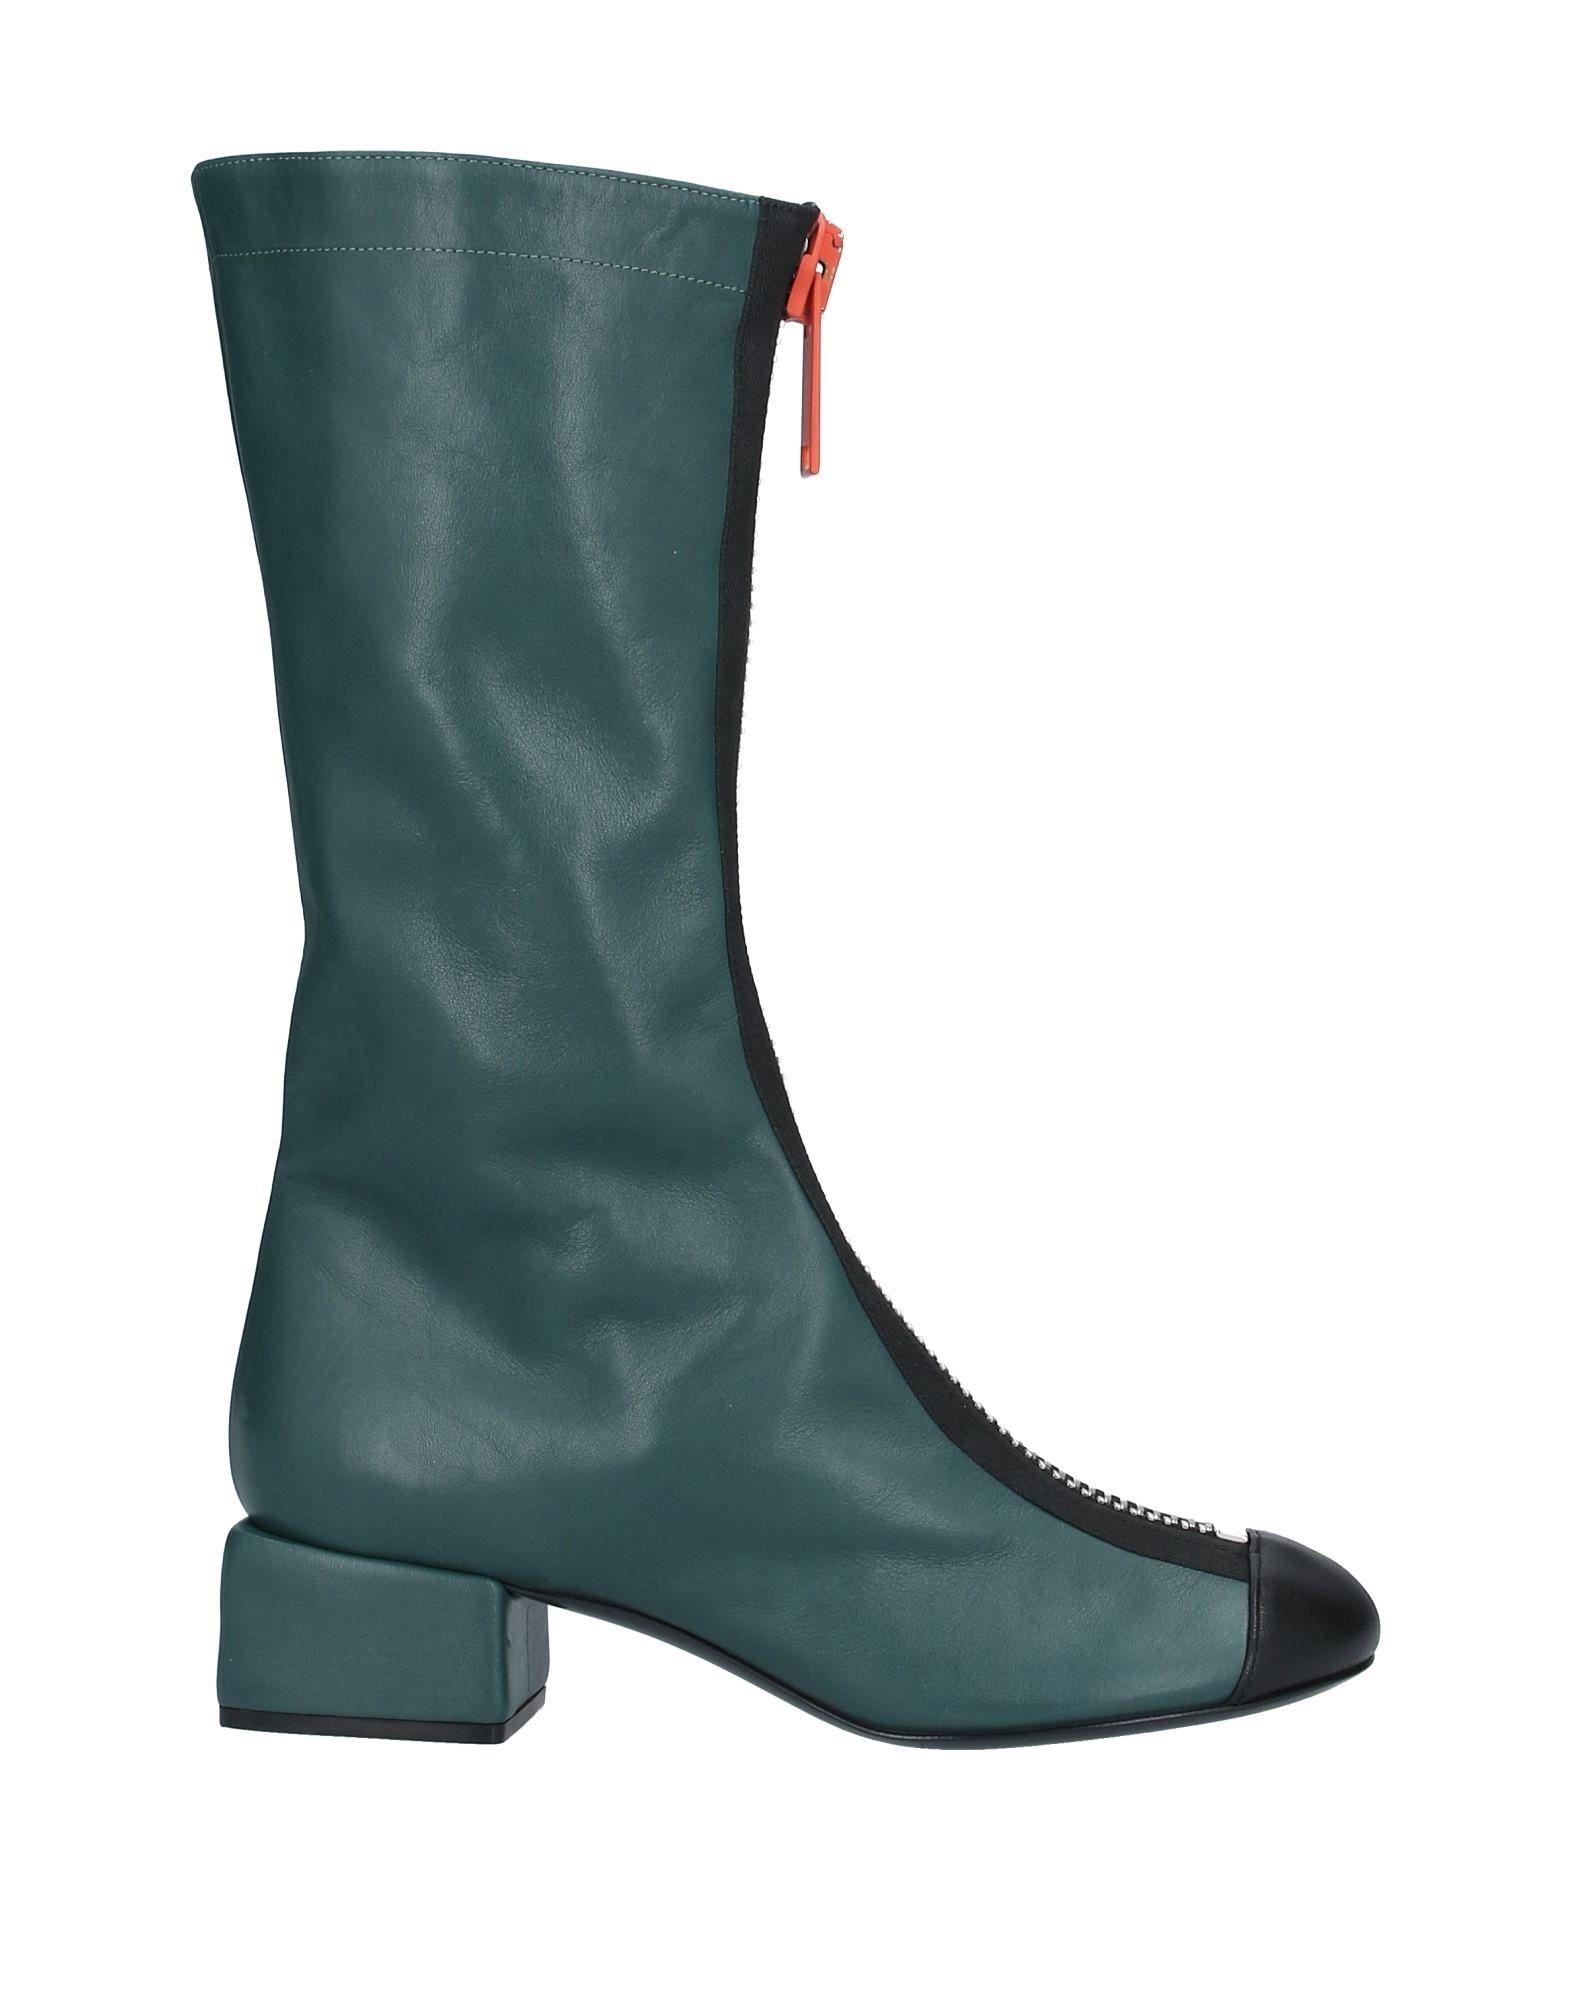 MARNI Boots - Item 11950235